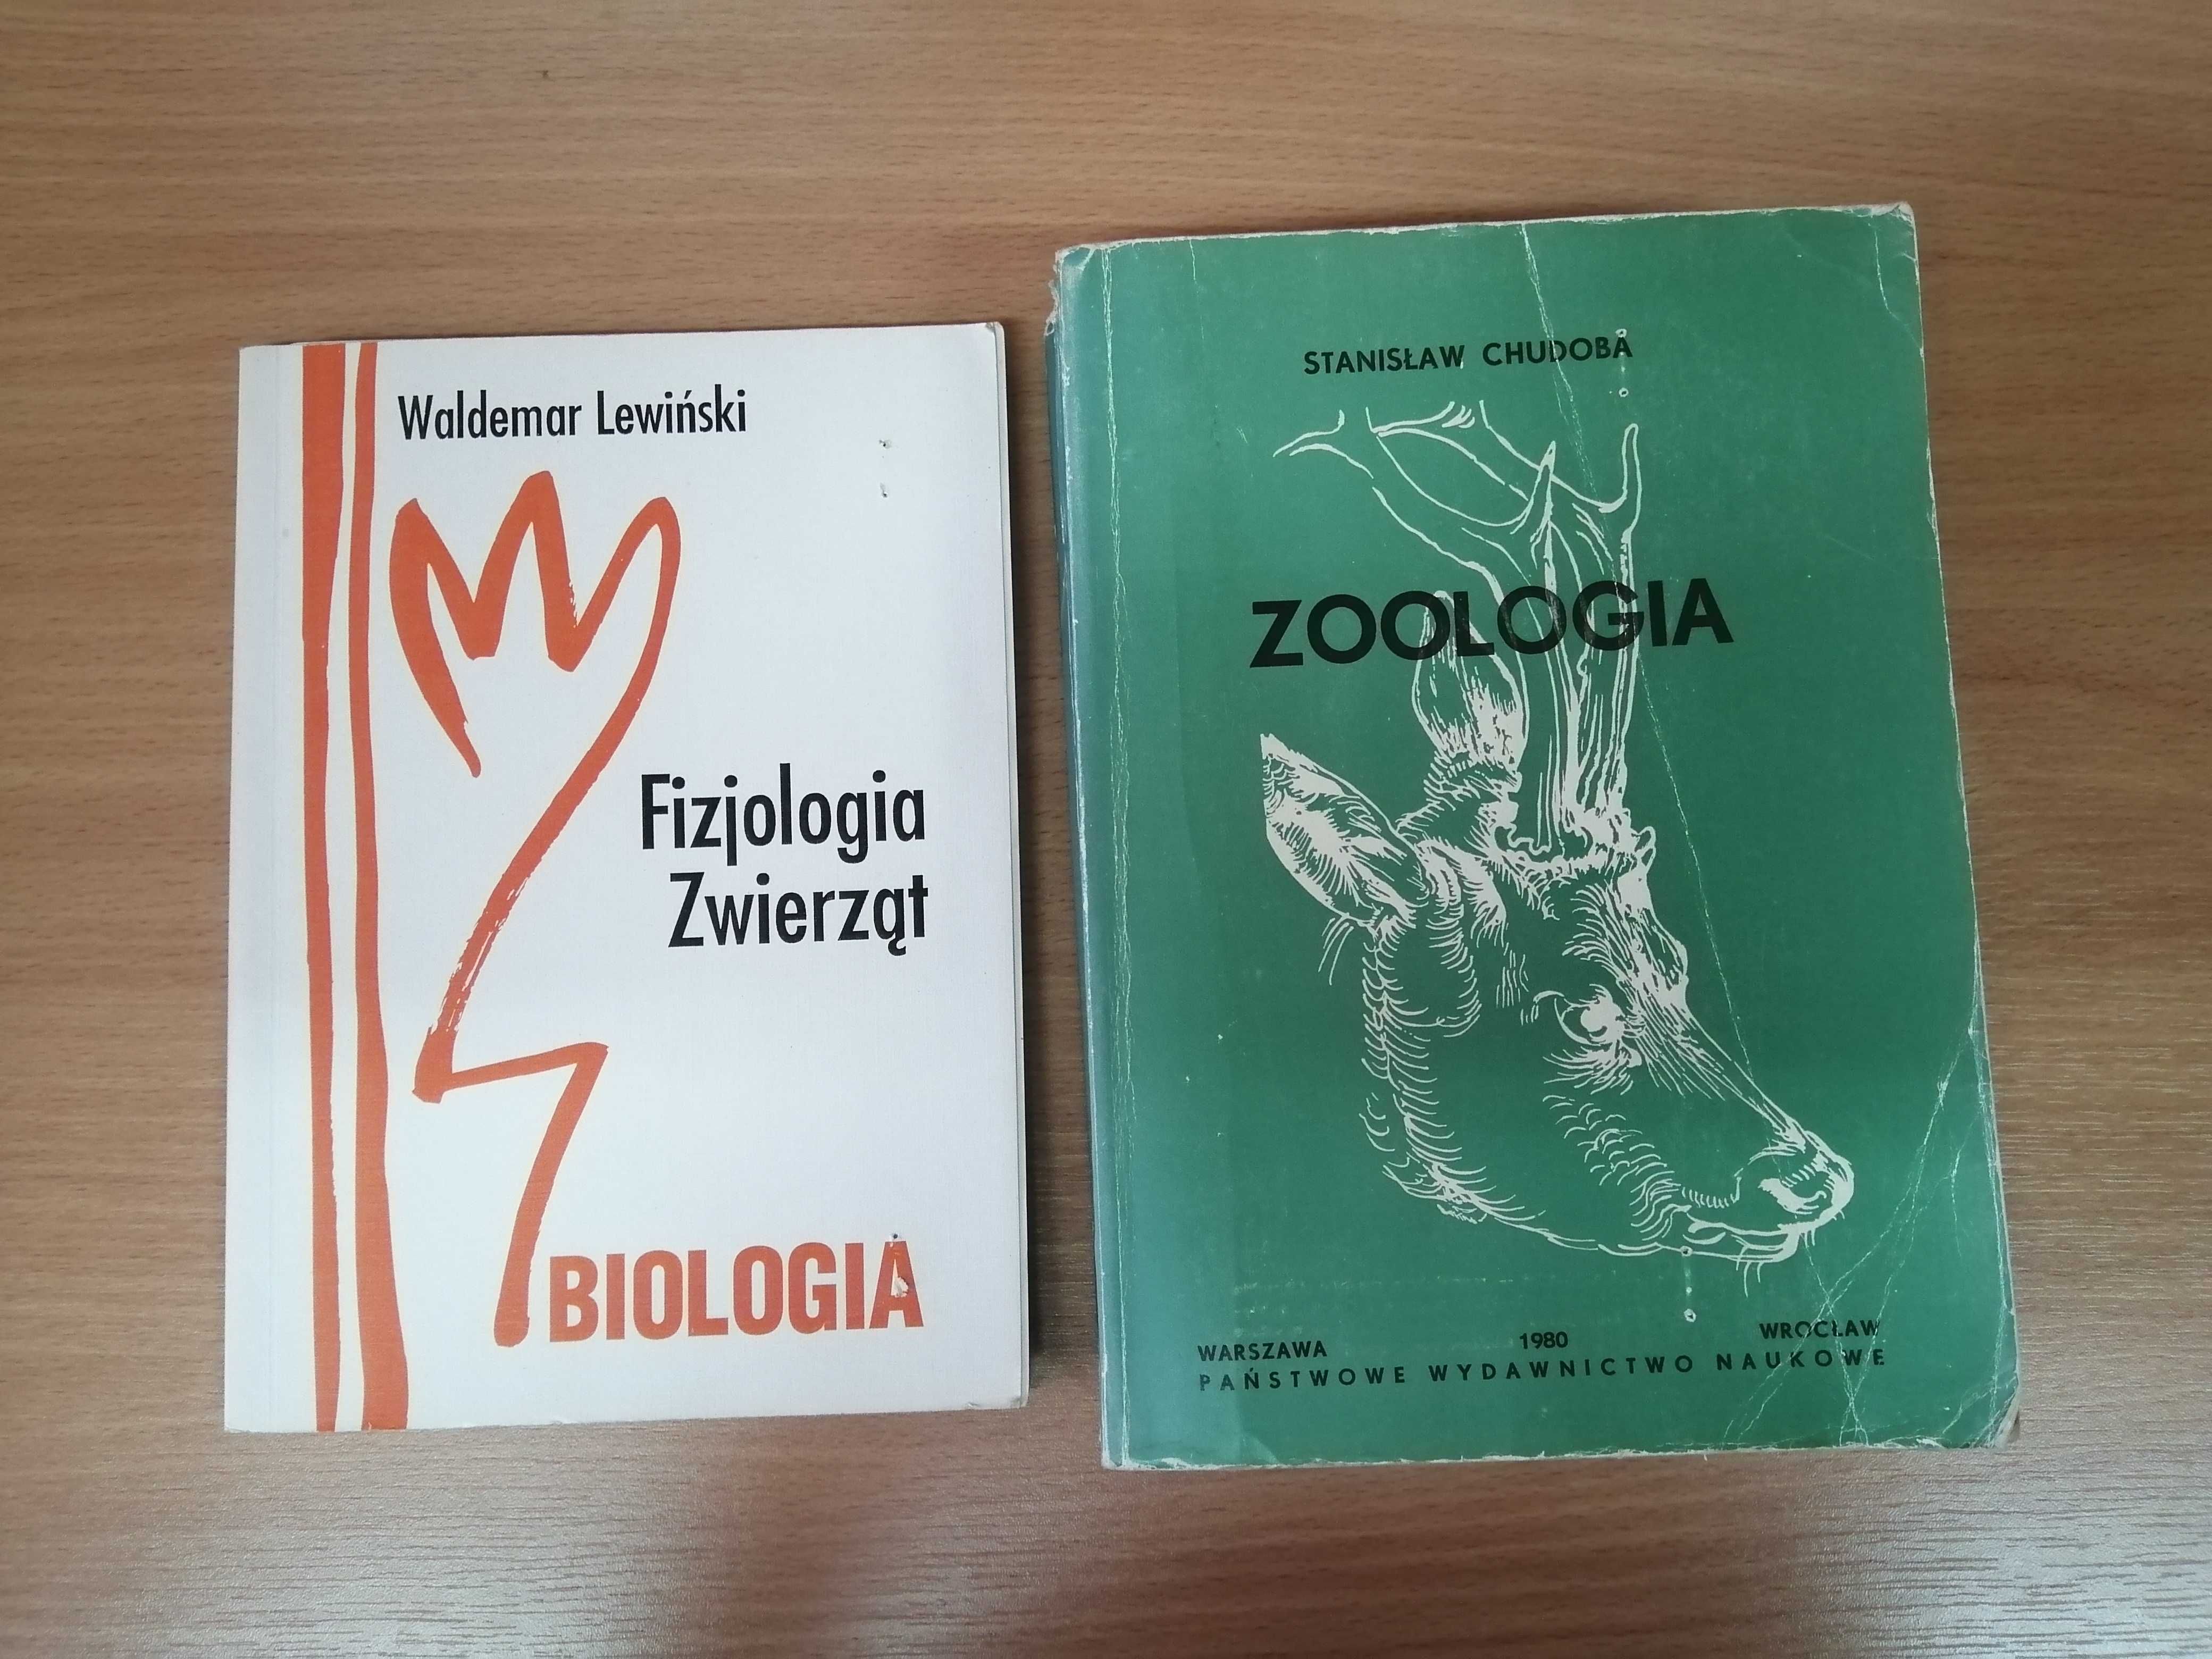 Fizjologia Lewiński Zoologia Chudoba